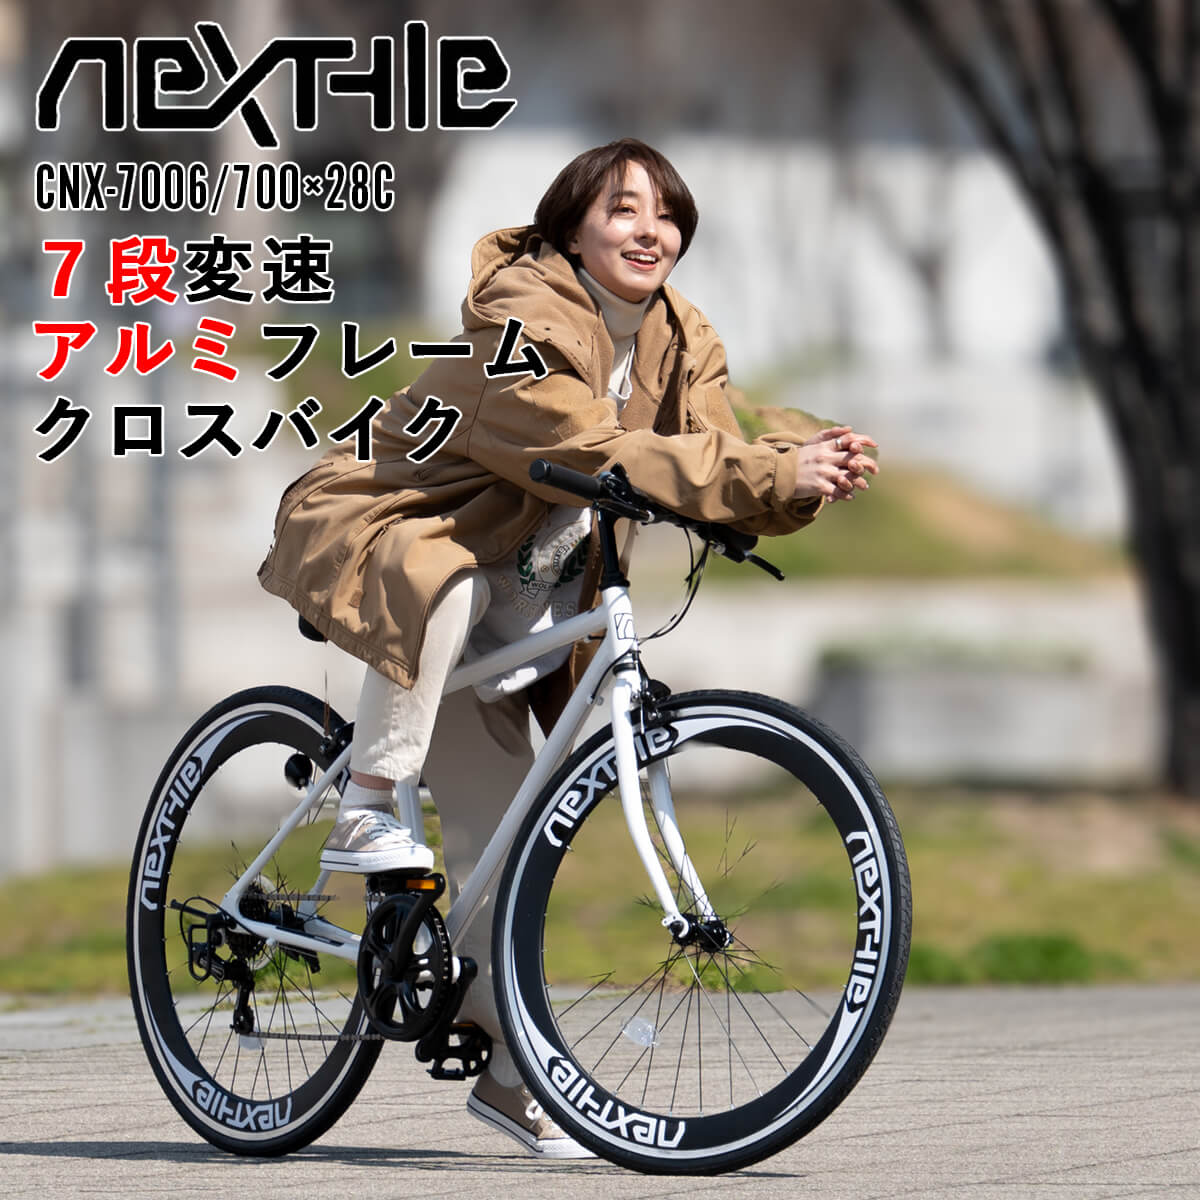 クロスバイク 完成品出荷 / 置き配可能 自転車 700×28C シマノ7段変速 軽量 アルミフレーム ディープリム ネクスタイル NEXTYLE  CNX-7006